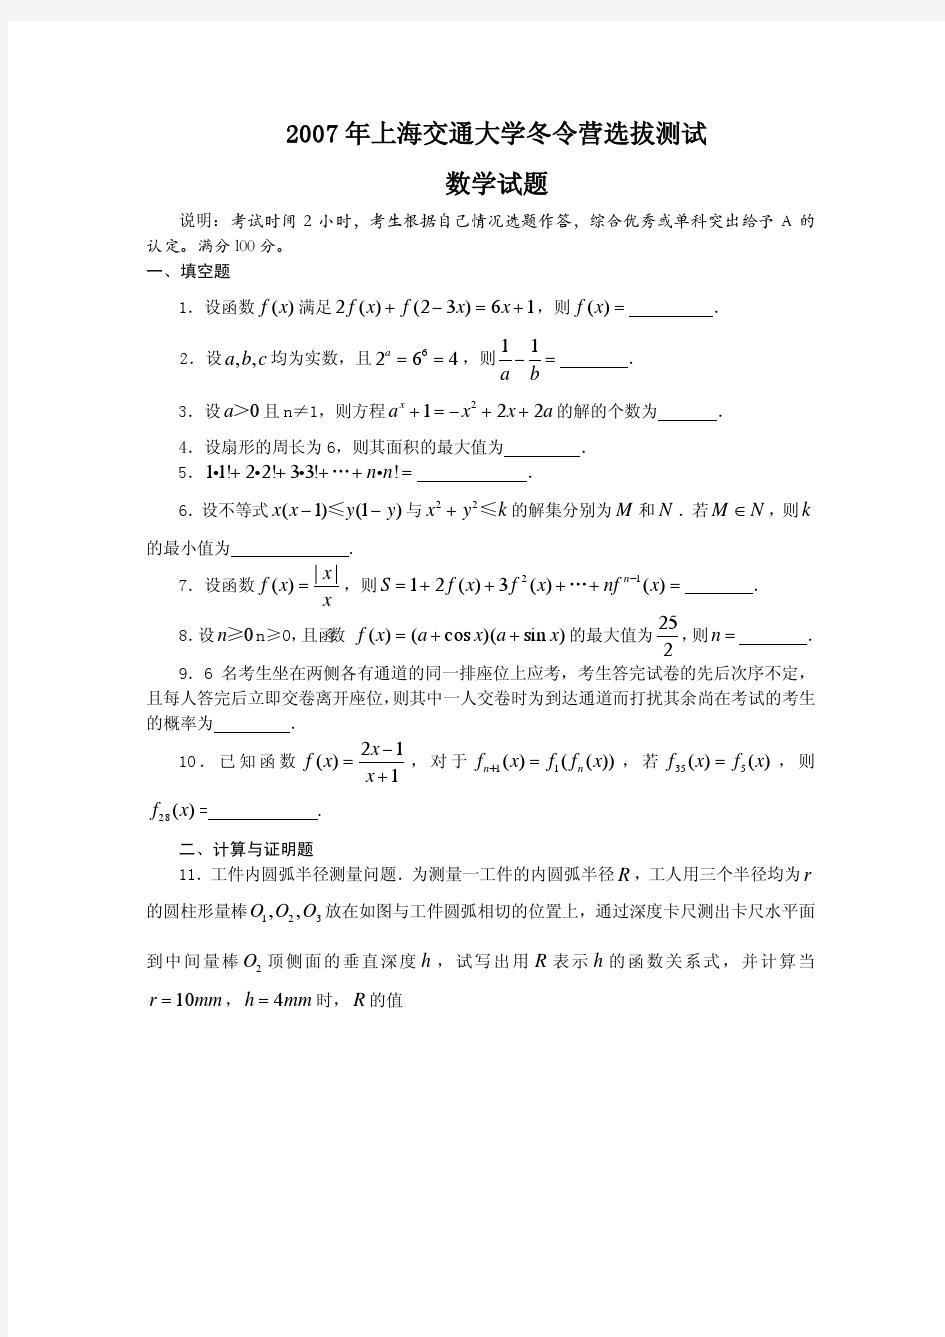 2007年上海交通大学自主招生选拔测试试卷(数学篇)